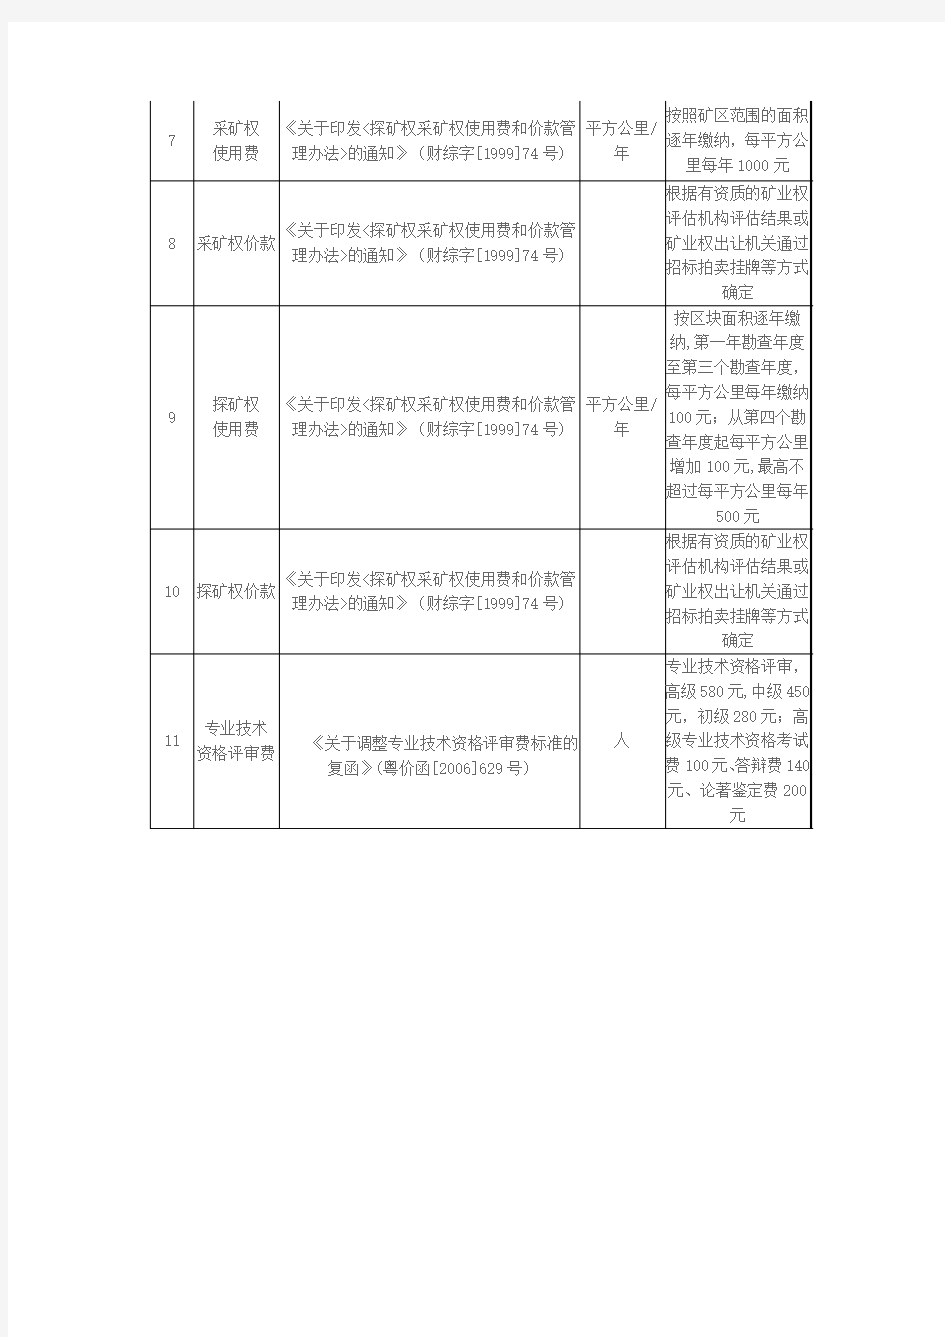 广东省国土资源厅收费公示表